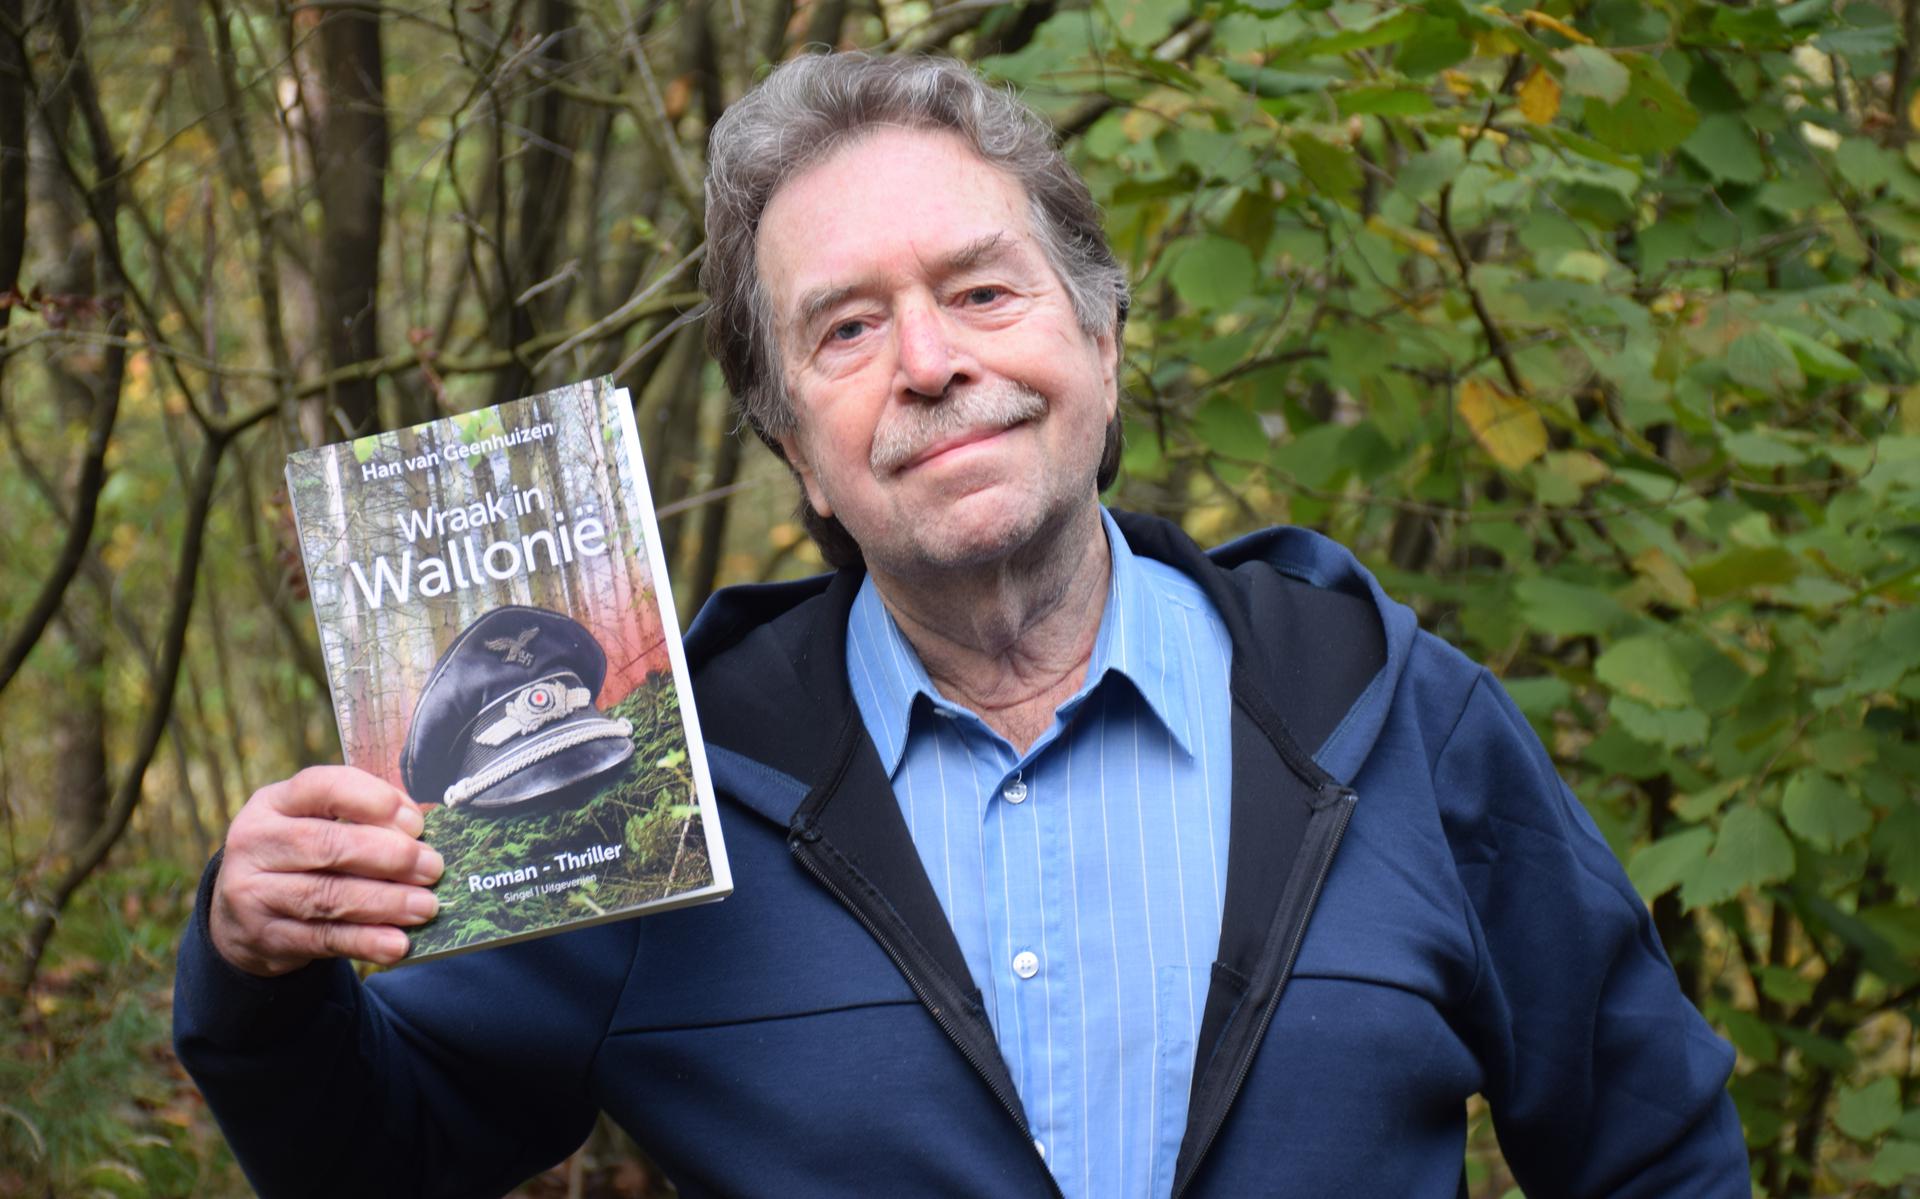 Han van Geenhuizen signiert den Thriller „Revenge in Wallonia“ in Dwingeloo